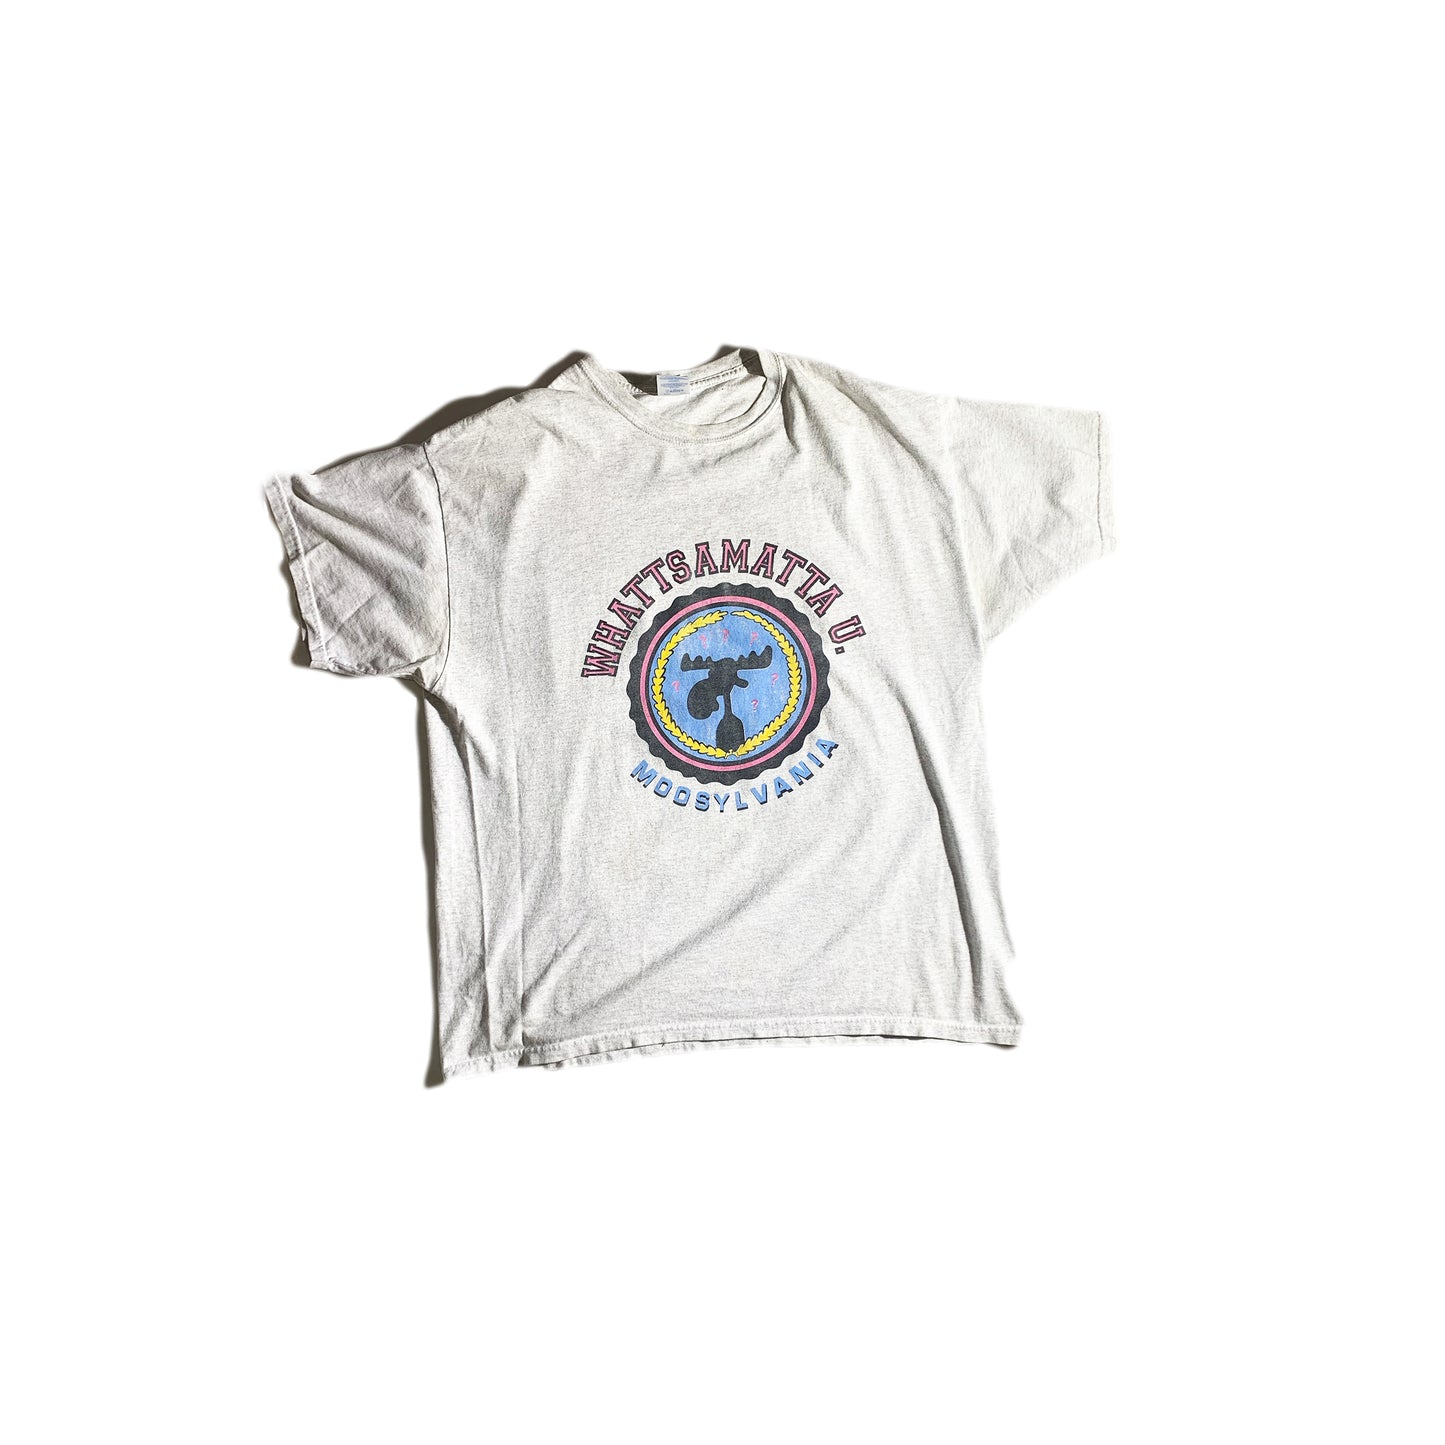 Vintage Whattsamatta T-Shirt Animal Tee